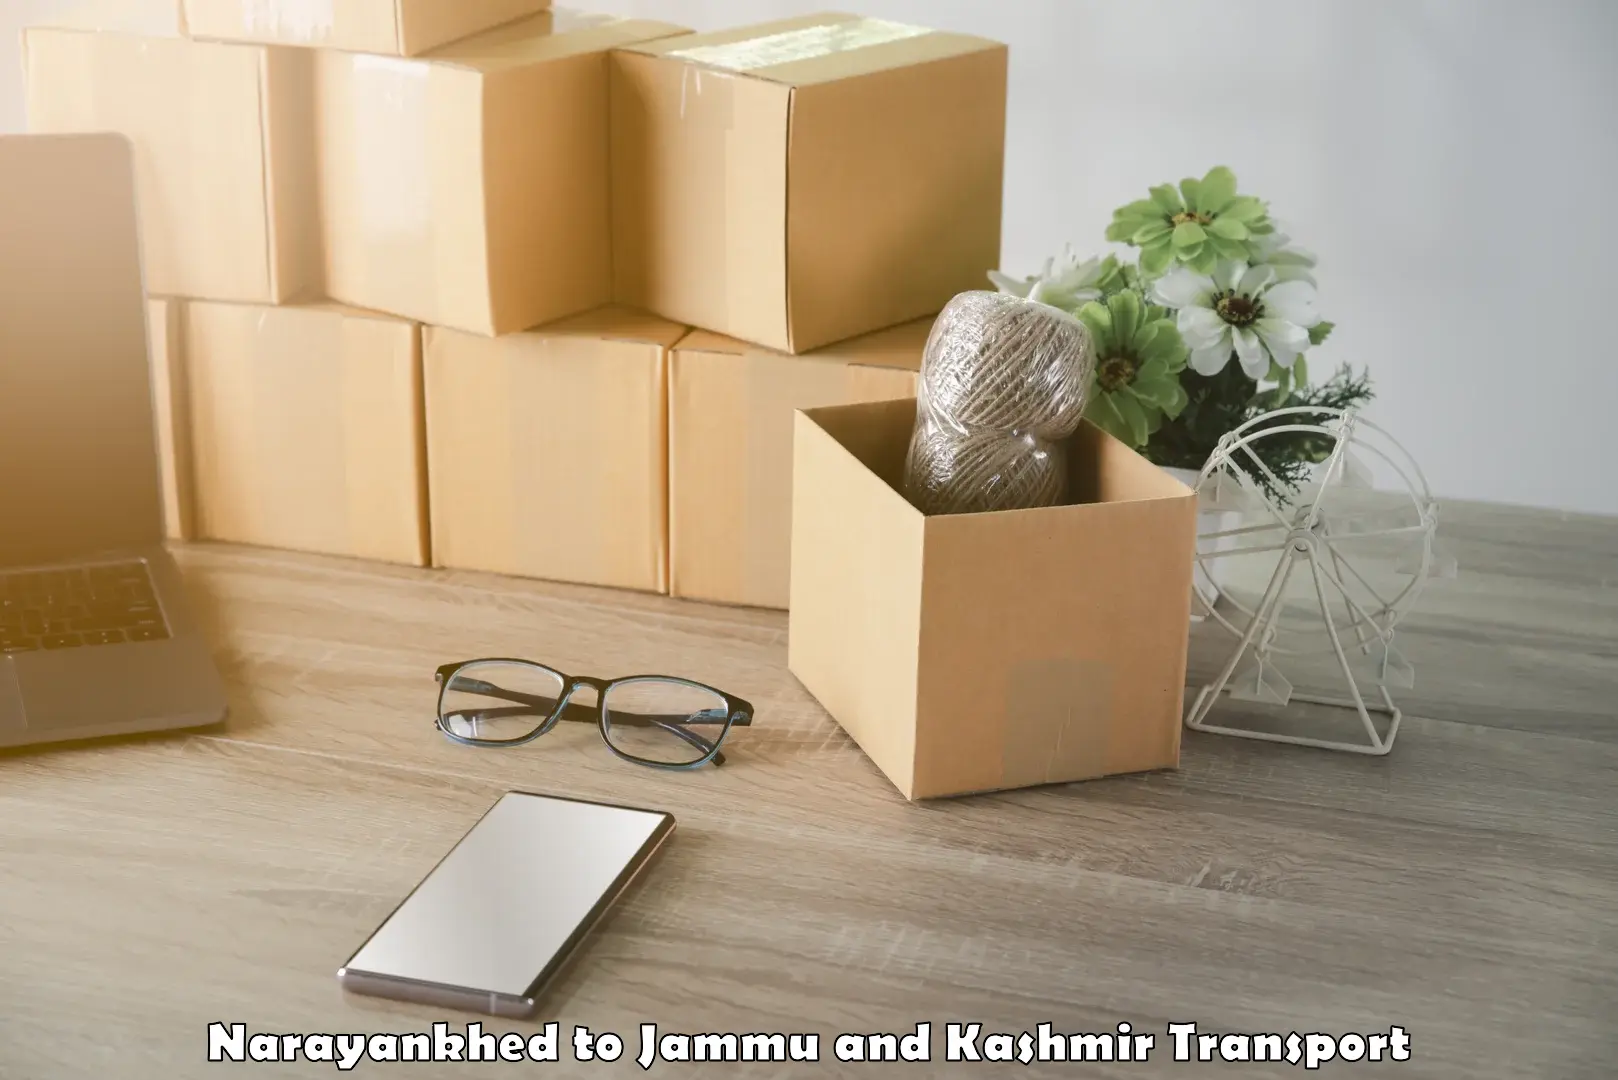 Logistics transportation services Narayankhed to Jammu and Kashmir